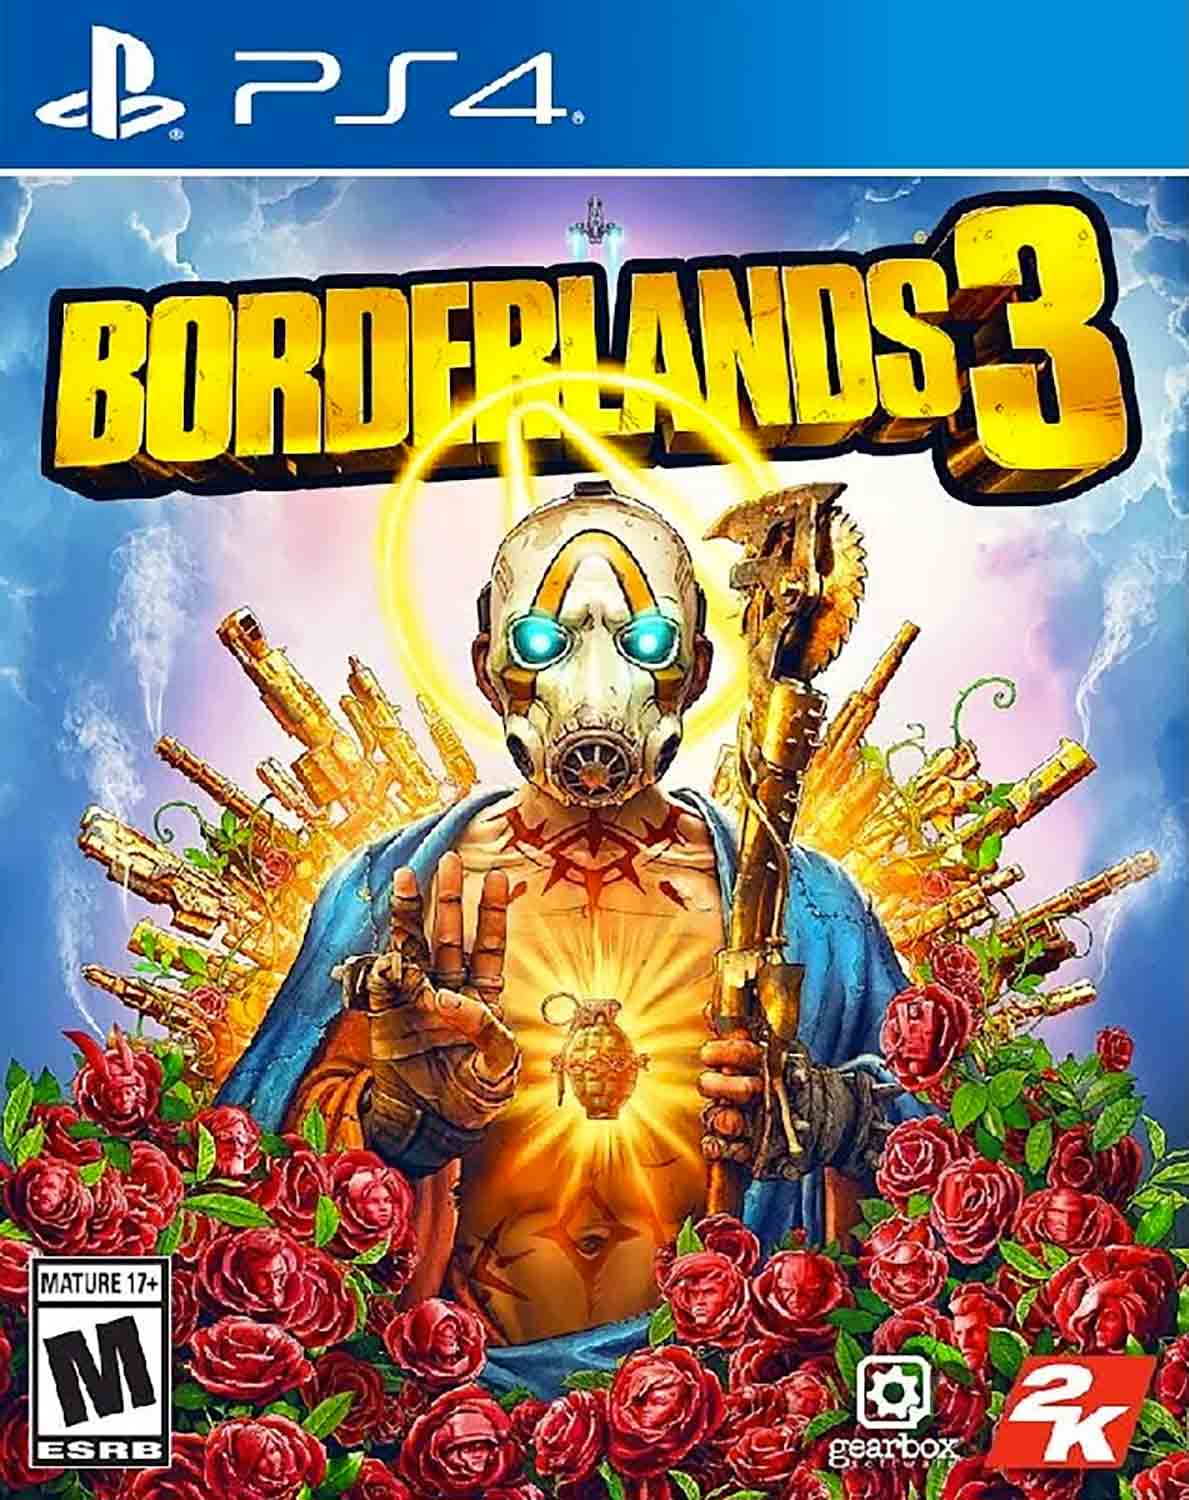 Hra Borderlands 3 pro PS4 Playstation 4 konzole